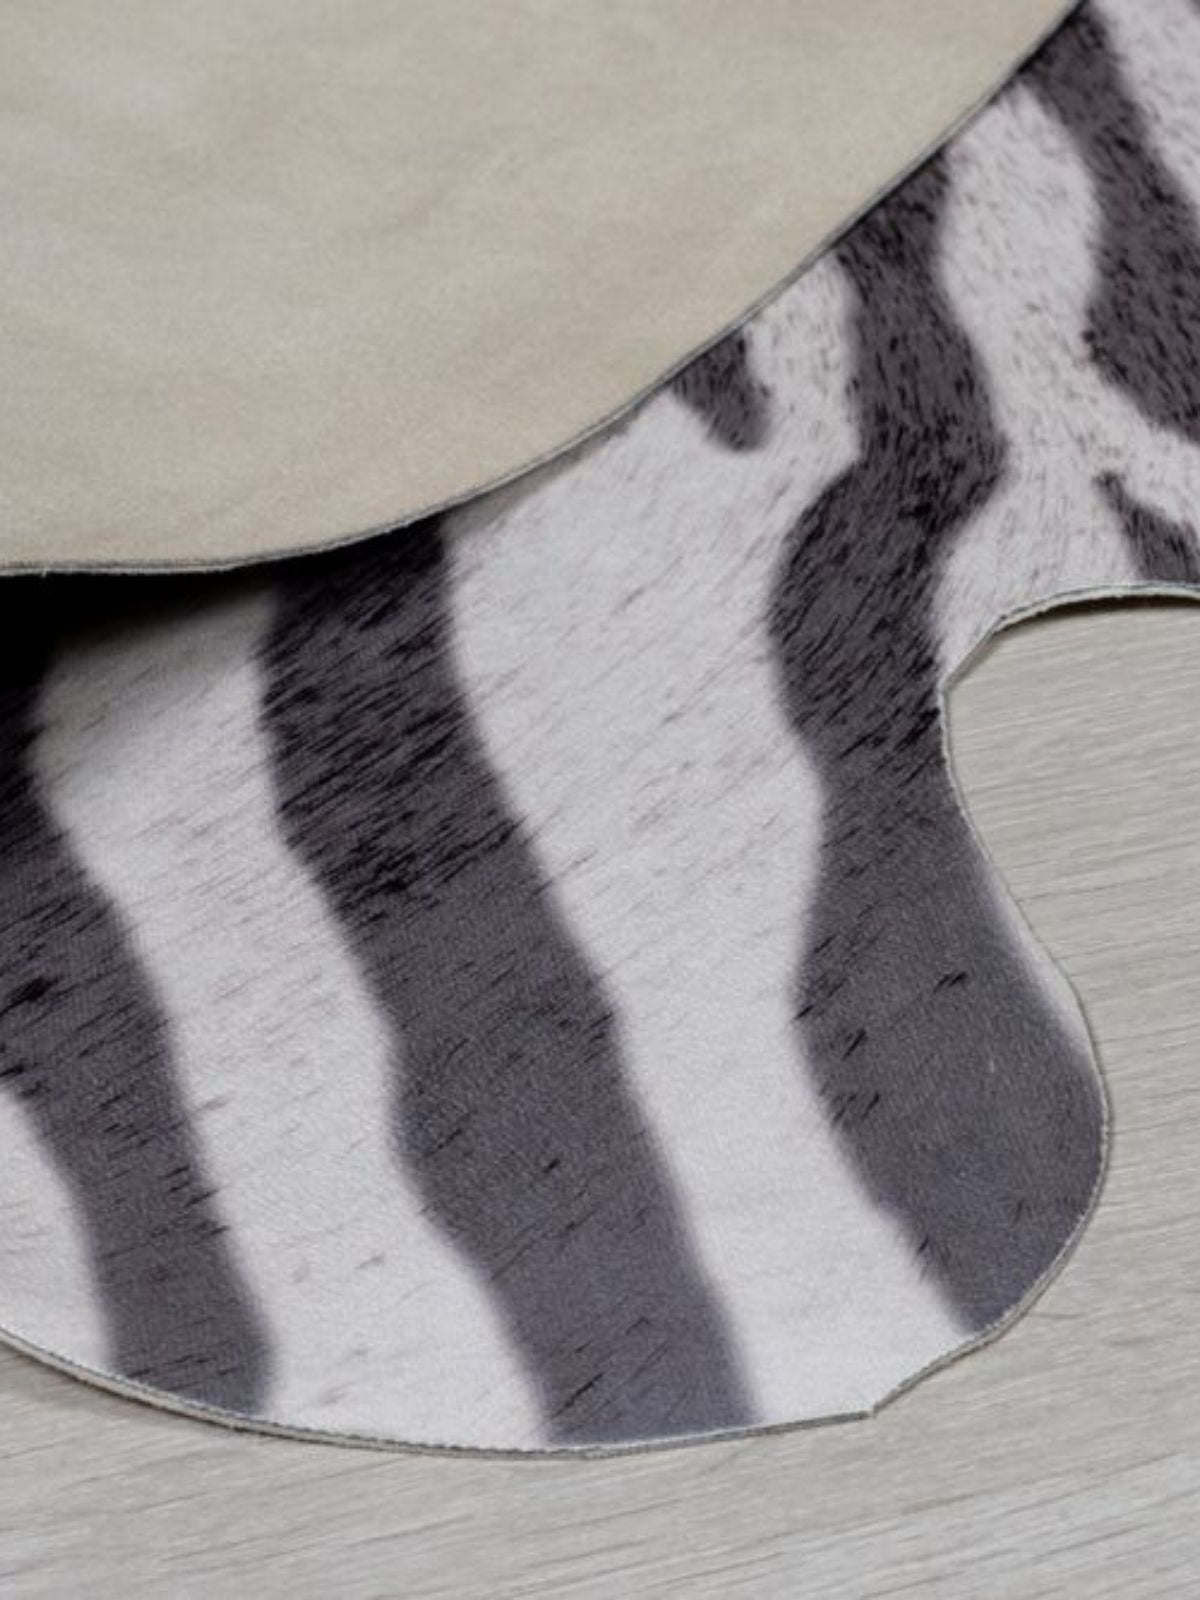 Tappeto animale Zebra Print in poliestere, colore bianco e nero 155x195 cm.-3